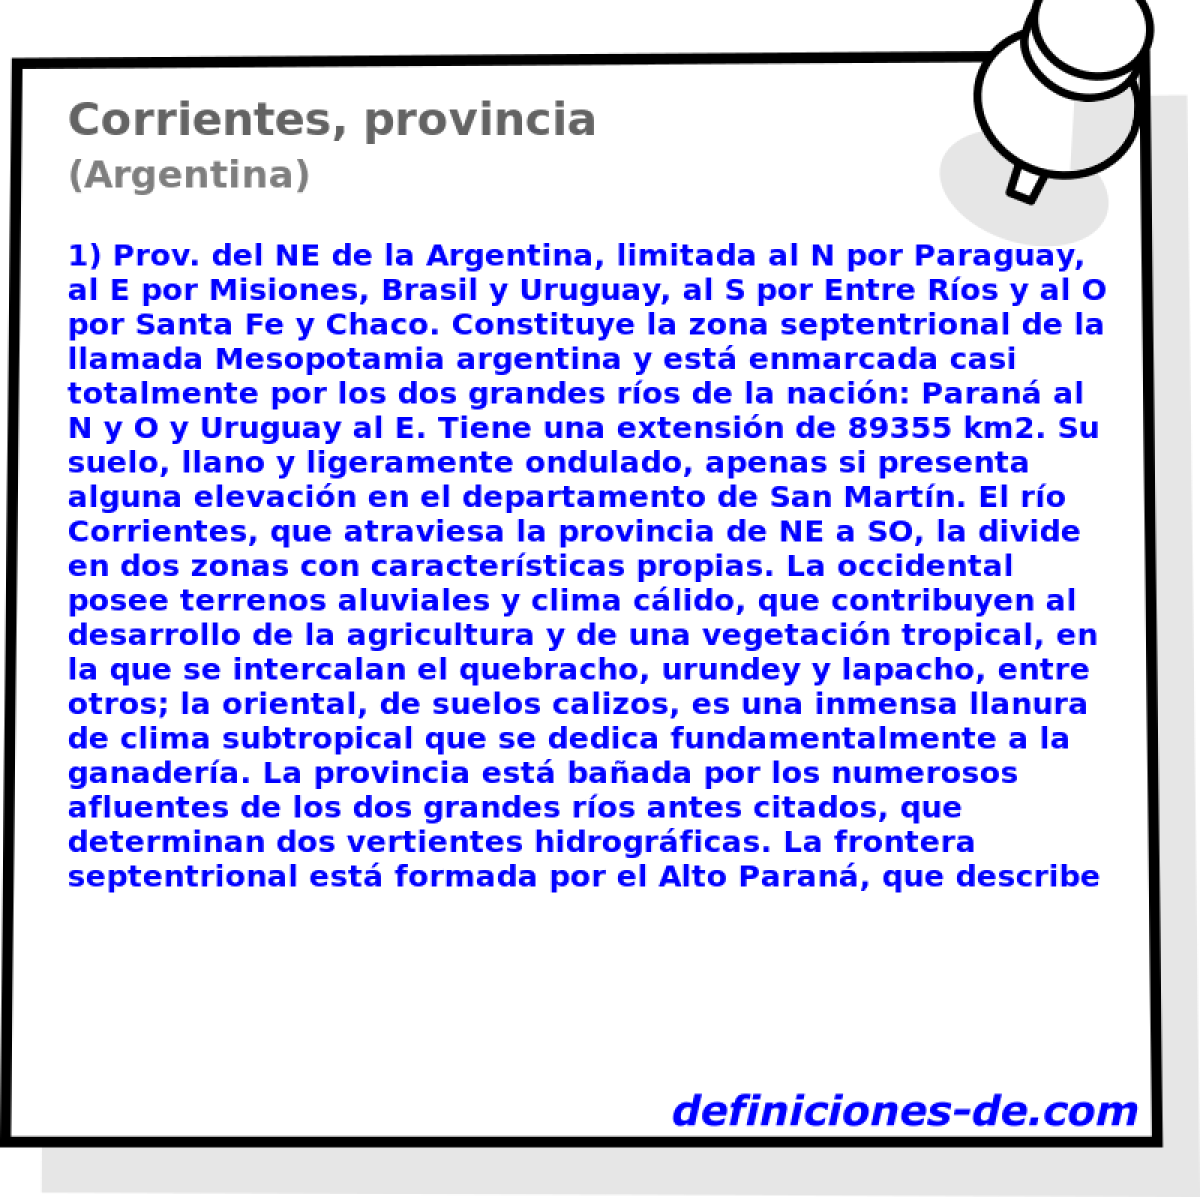 Corrientes, provincia (Argentina)